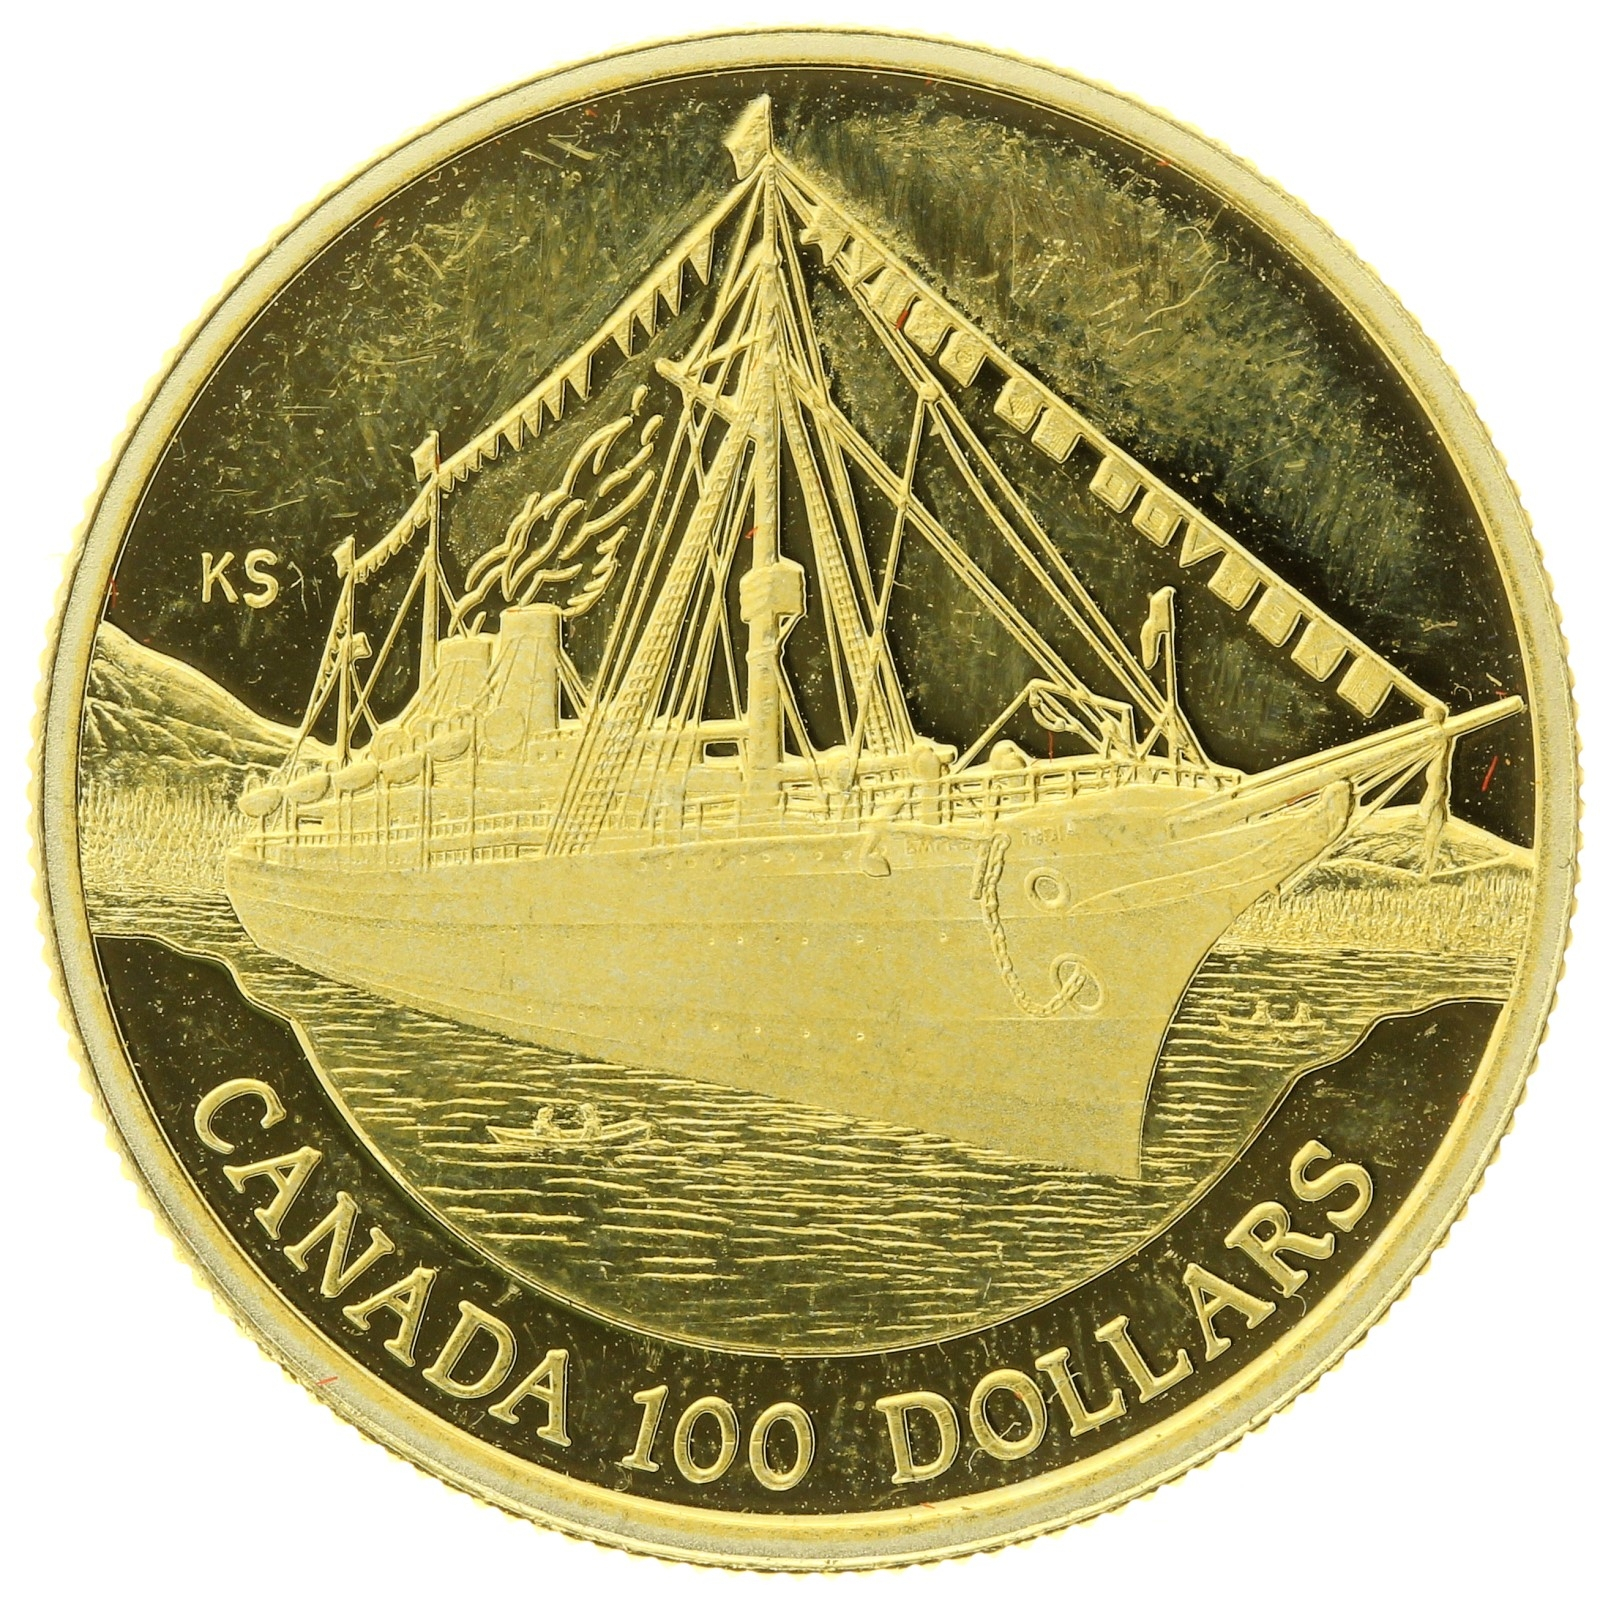 Canada - 100 Dollars - 1991 - Elizabeth II - Empress of India - 1/4oz